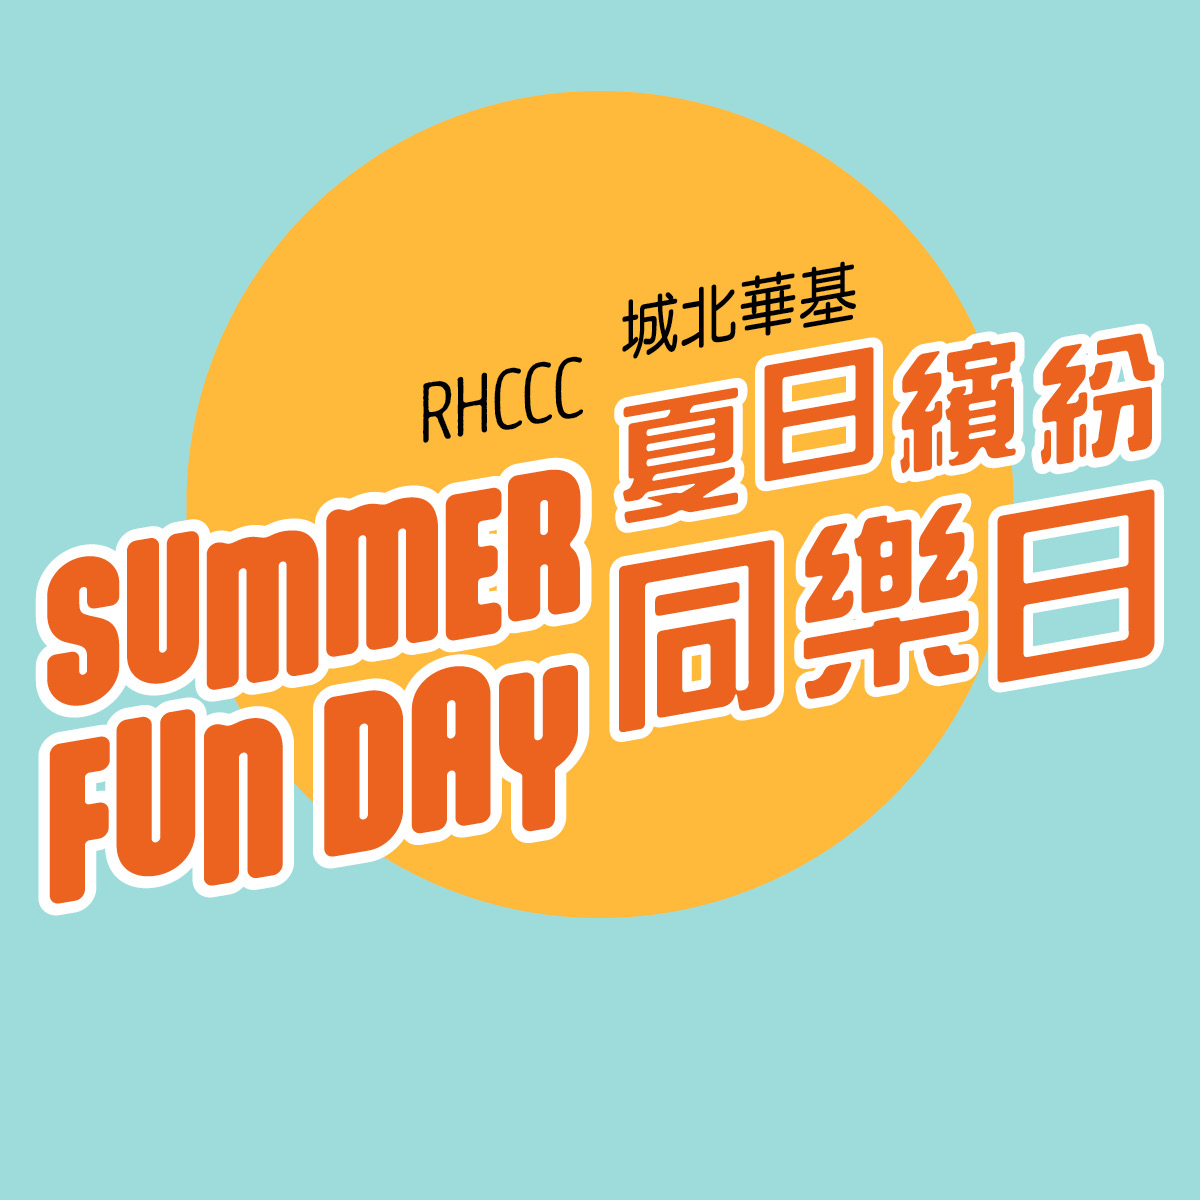 RHCCC Summer Fun Day | 城北華基夏日繽紛同樂日